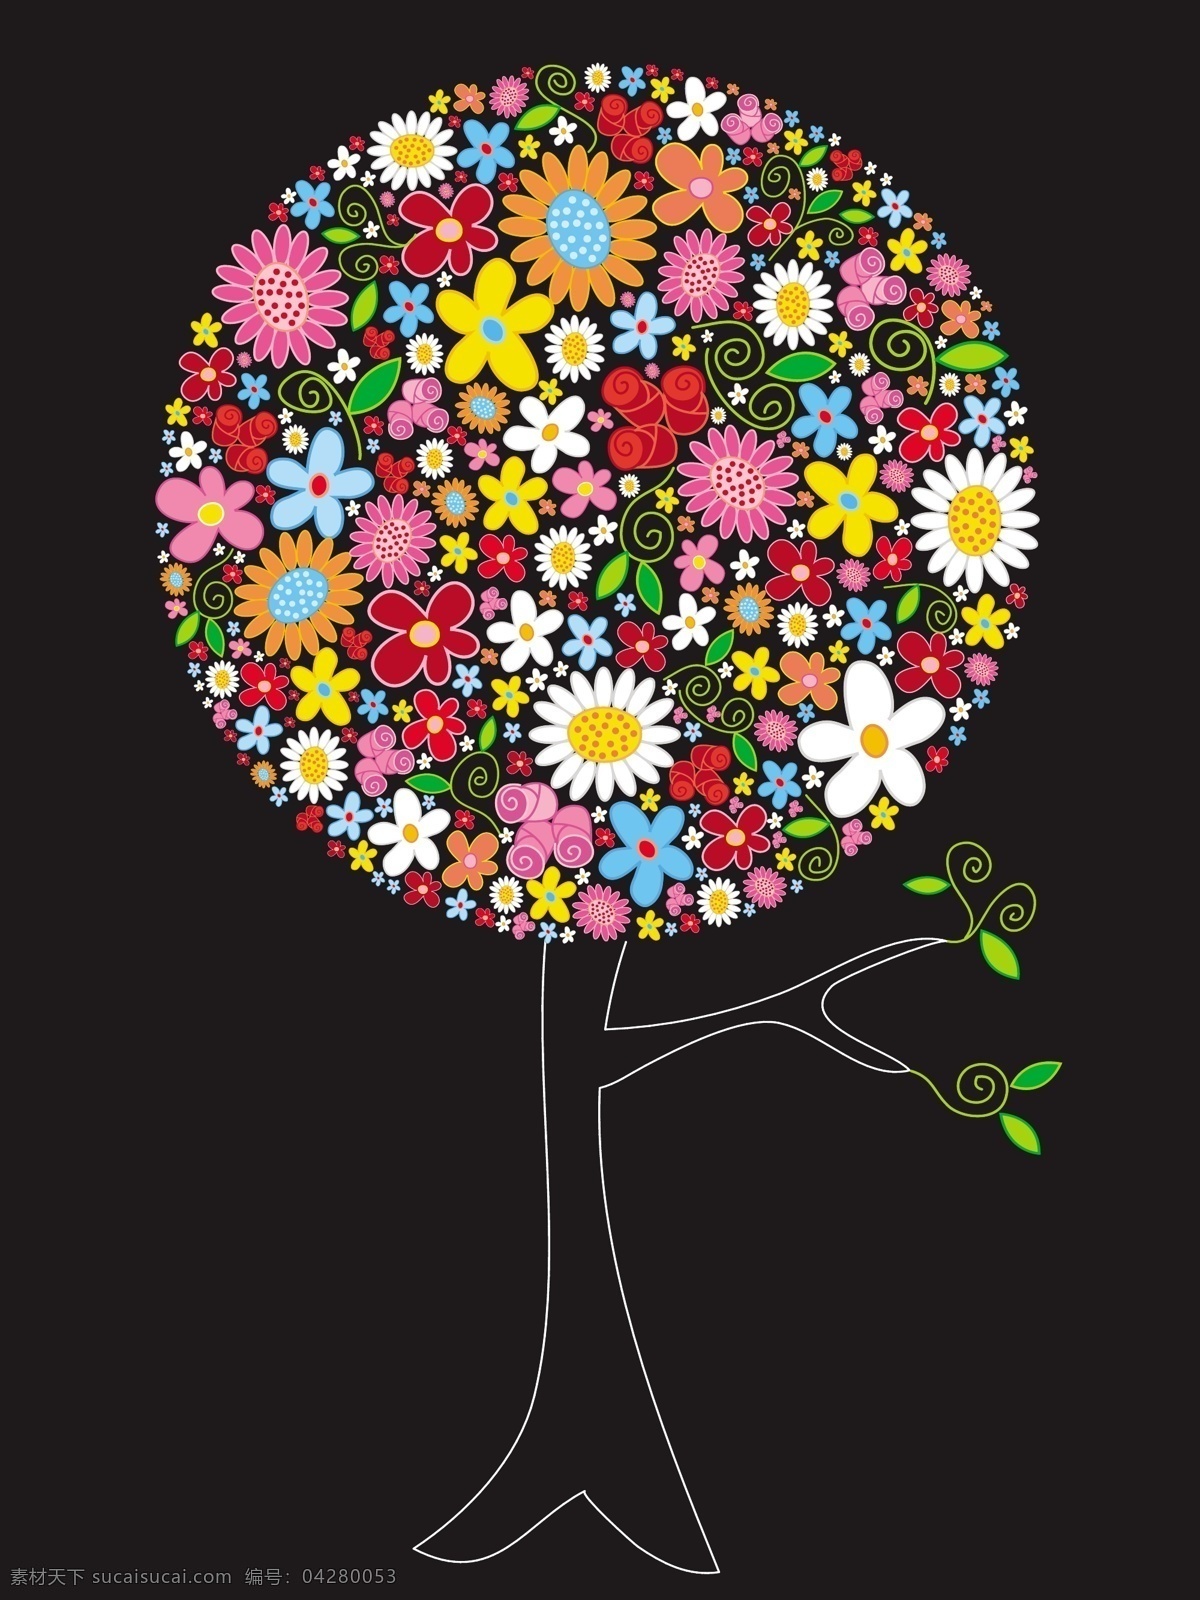 色彩 花卉 组成 树木 图案 矢量图 矢量边框花纹 矢量图库